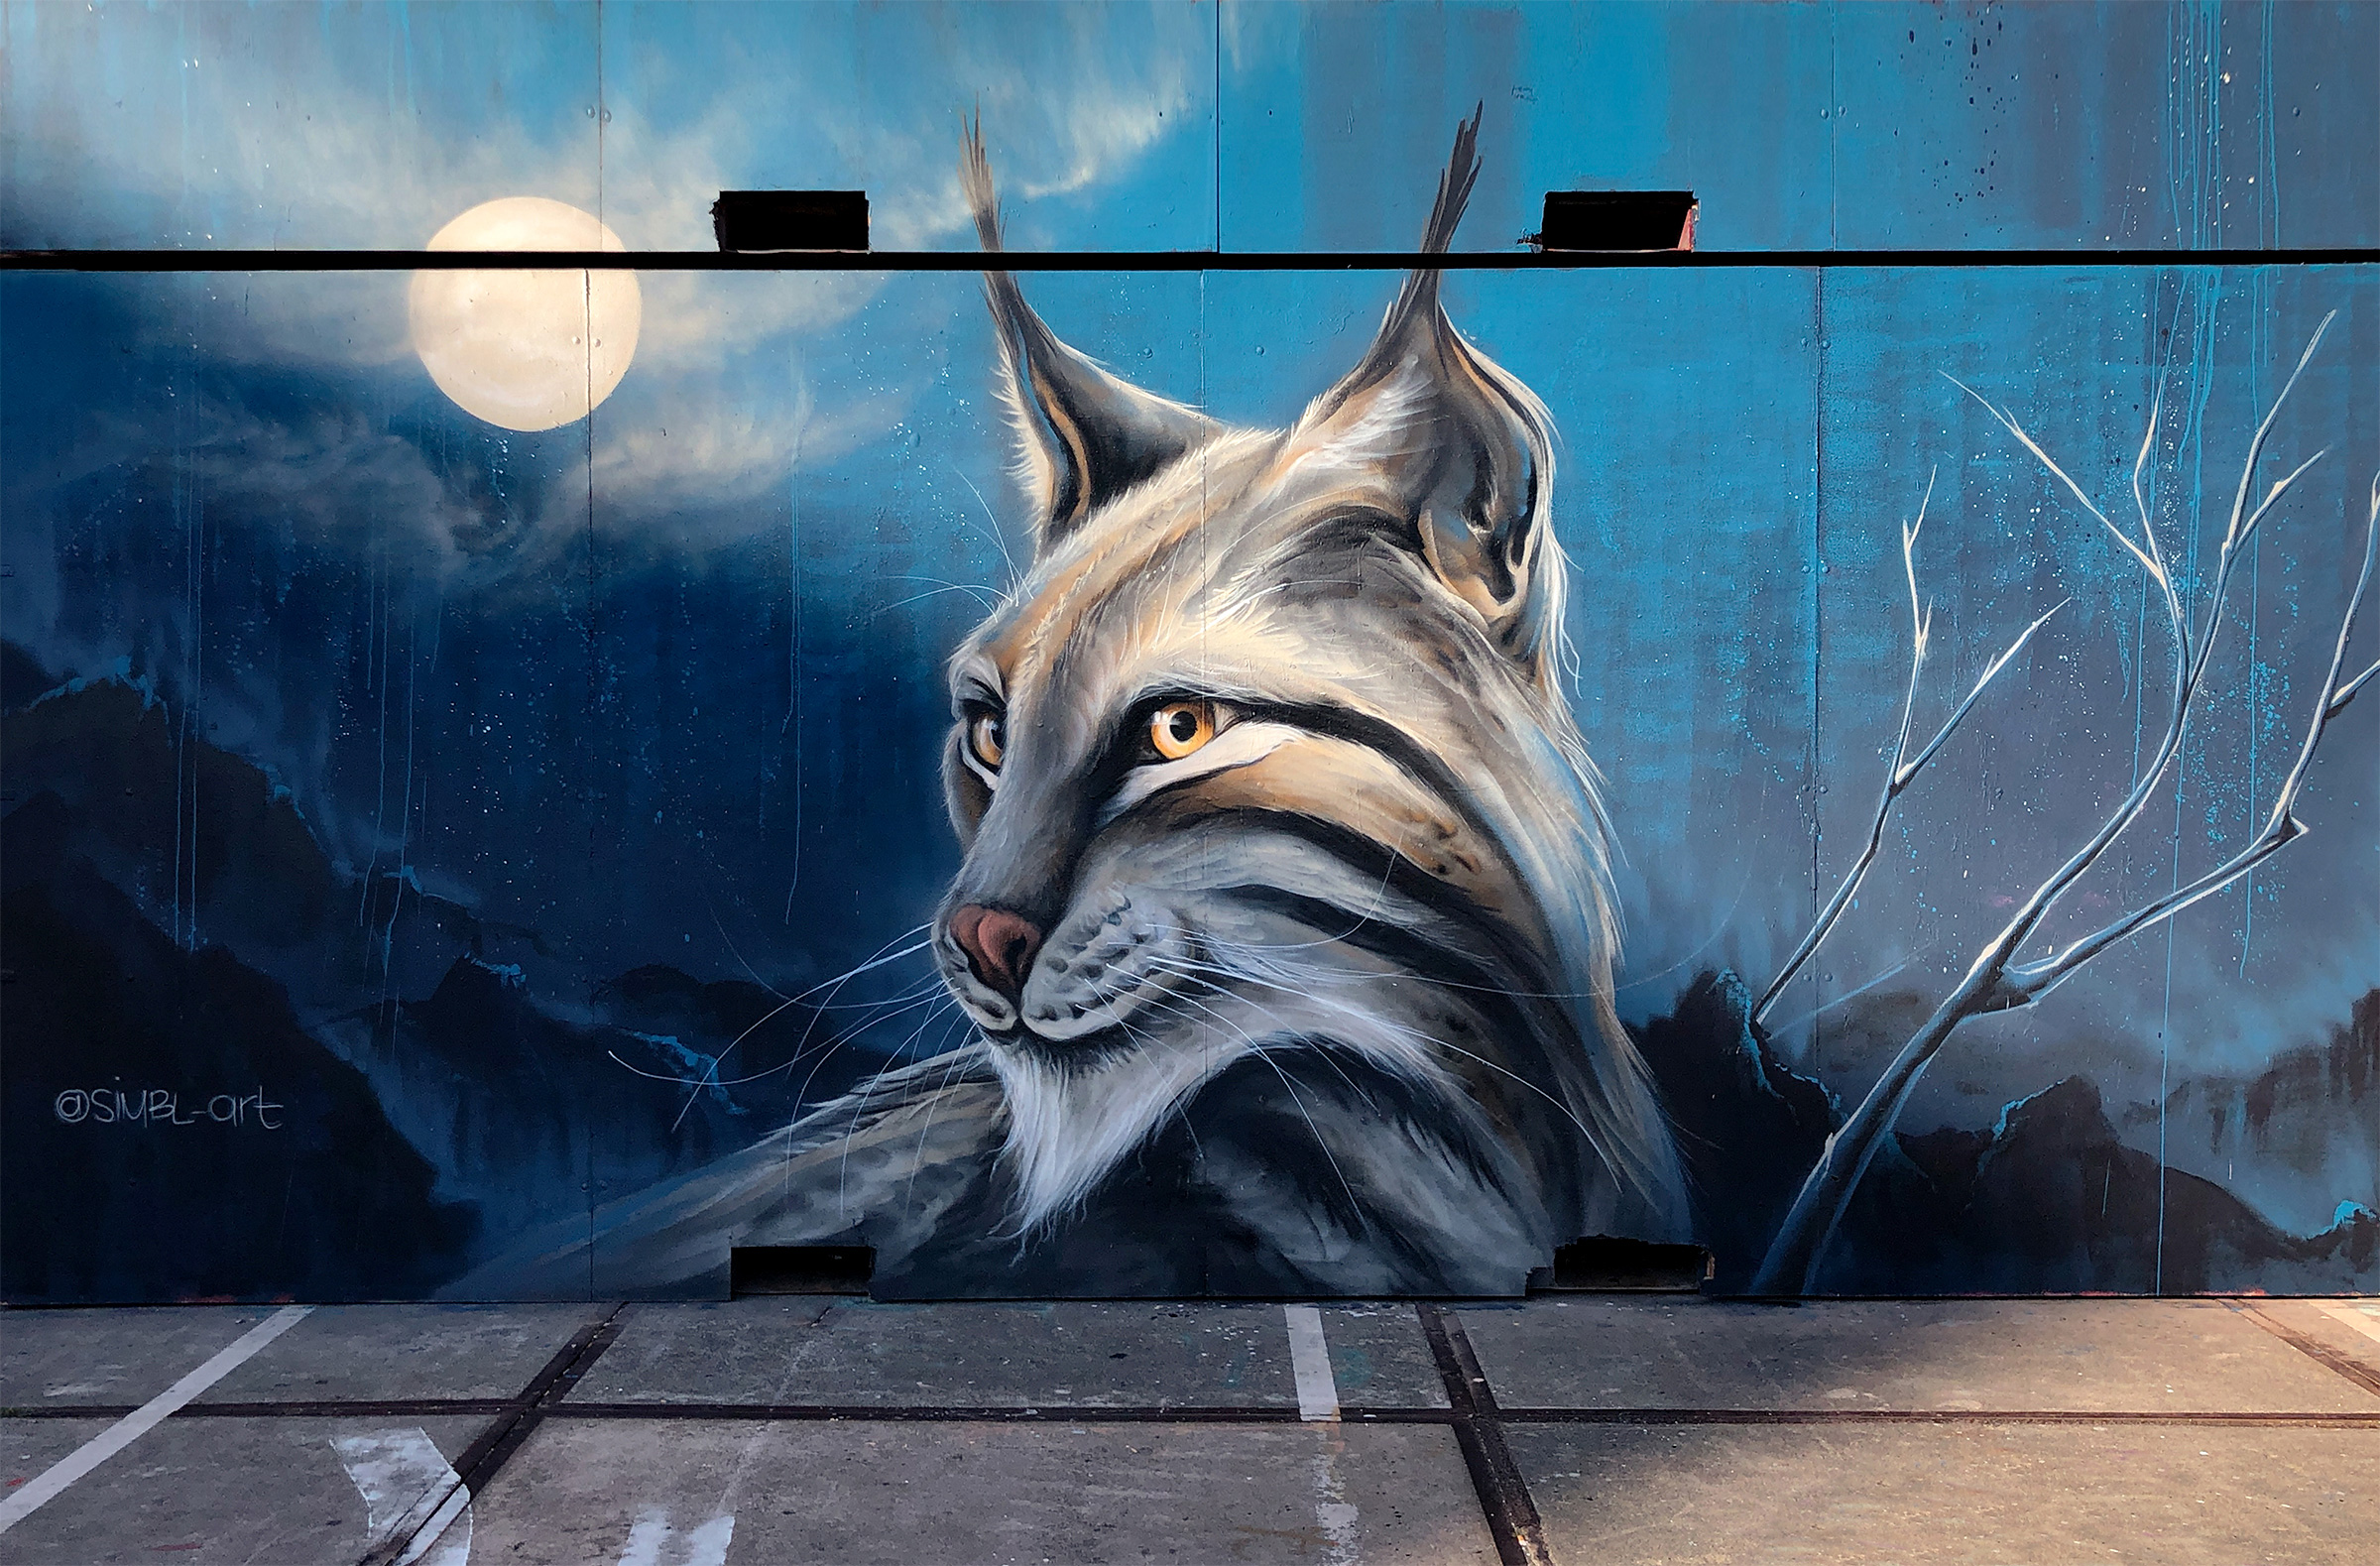 lynx, cat, cats, kat, katten, bedreigde dieren, endangered animals, street-art, graffiti, wall painting, 